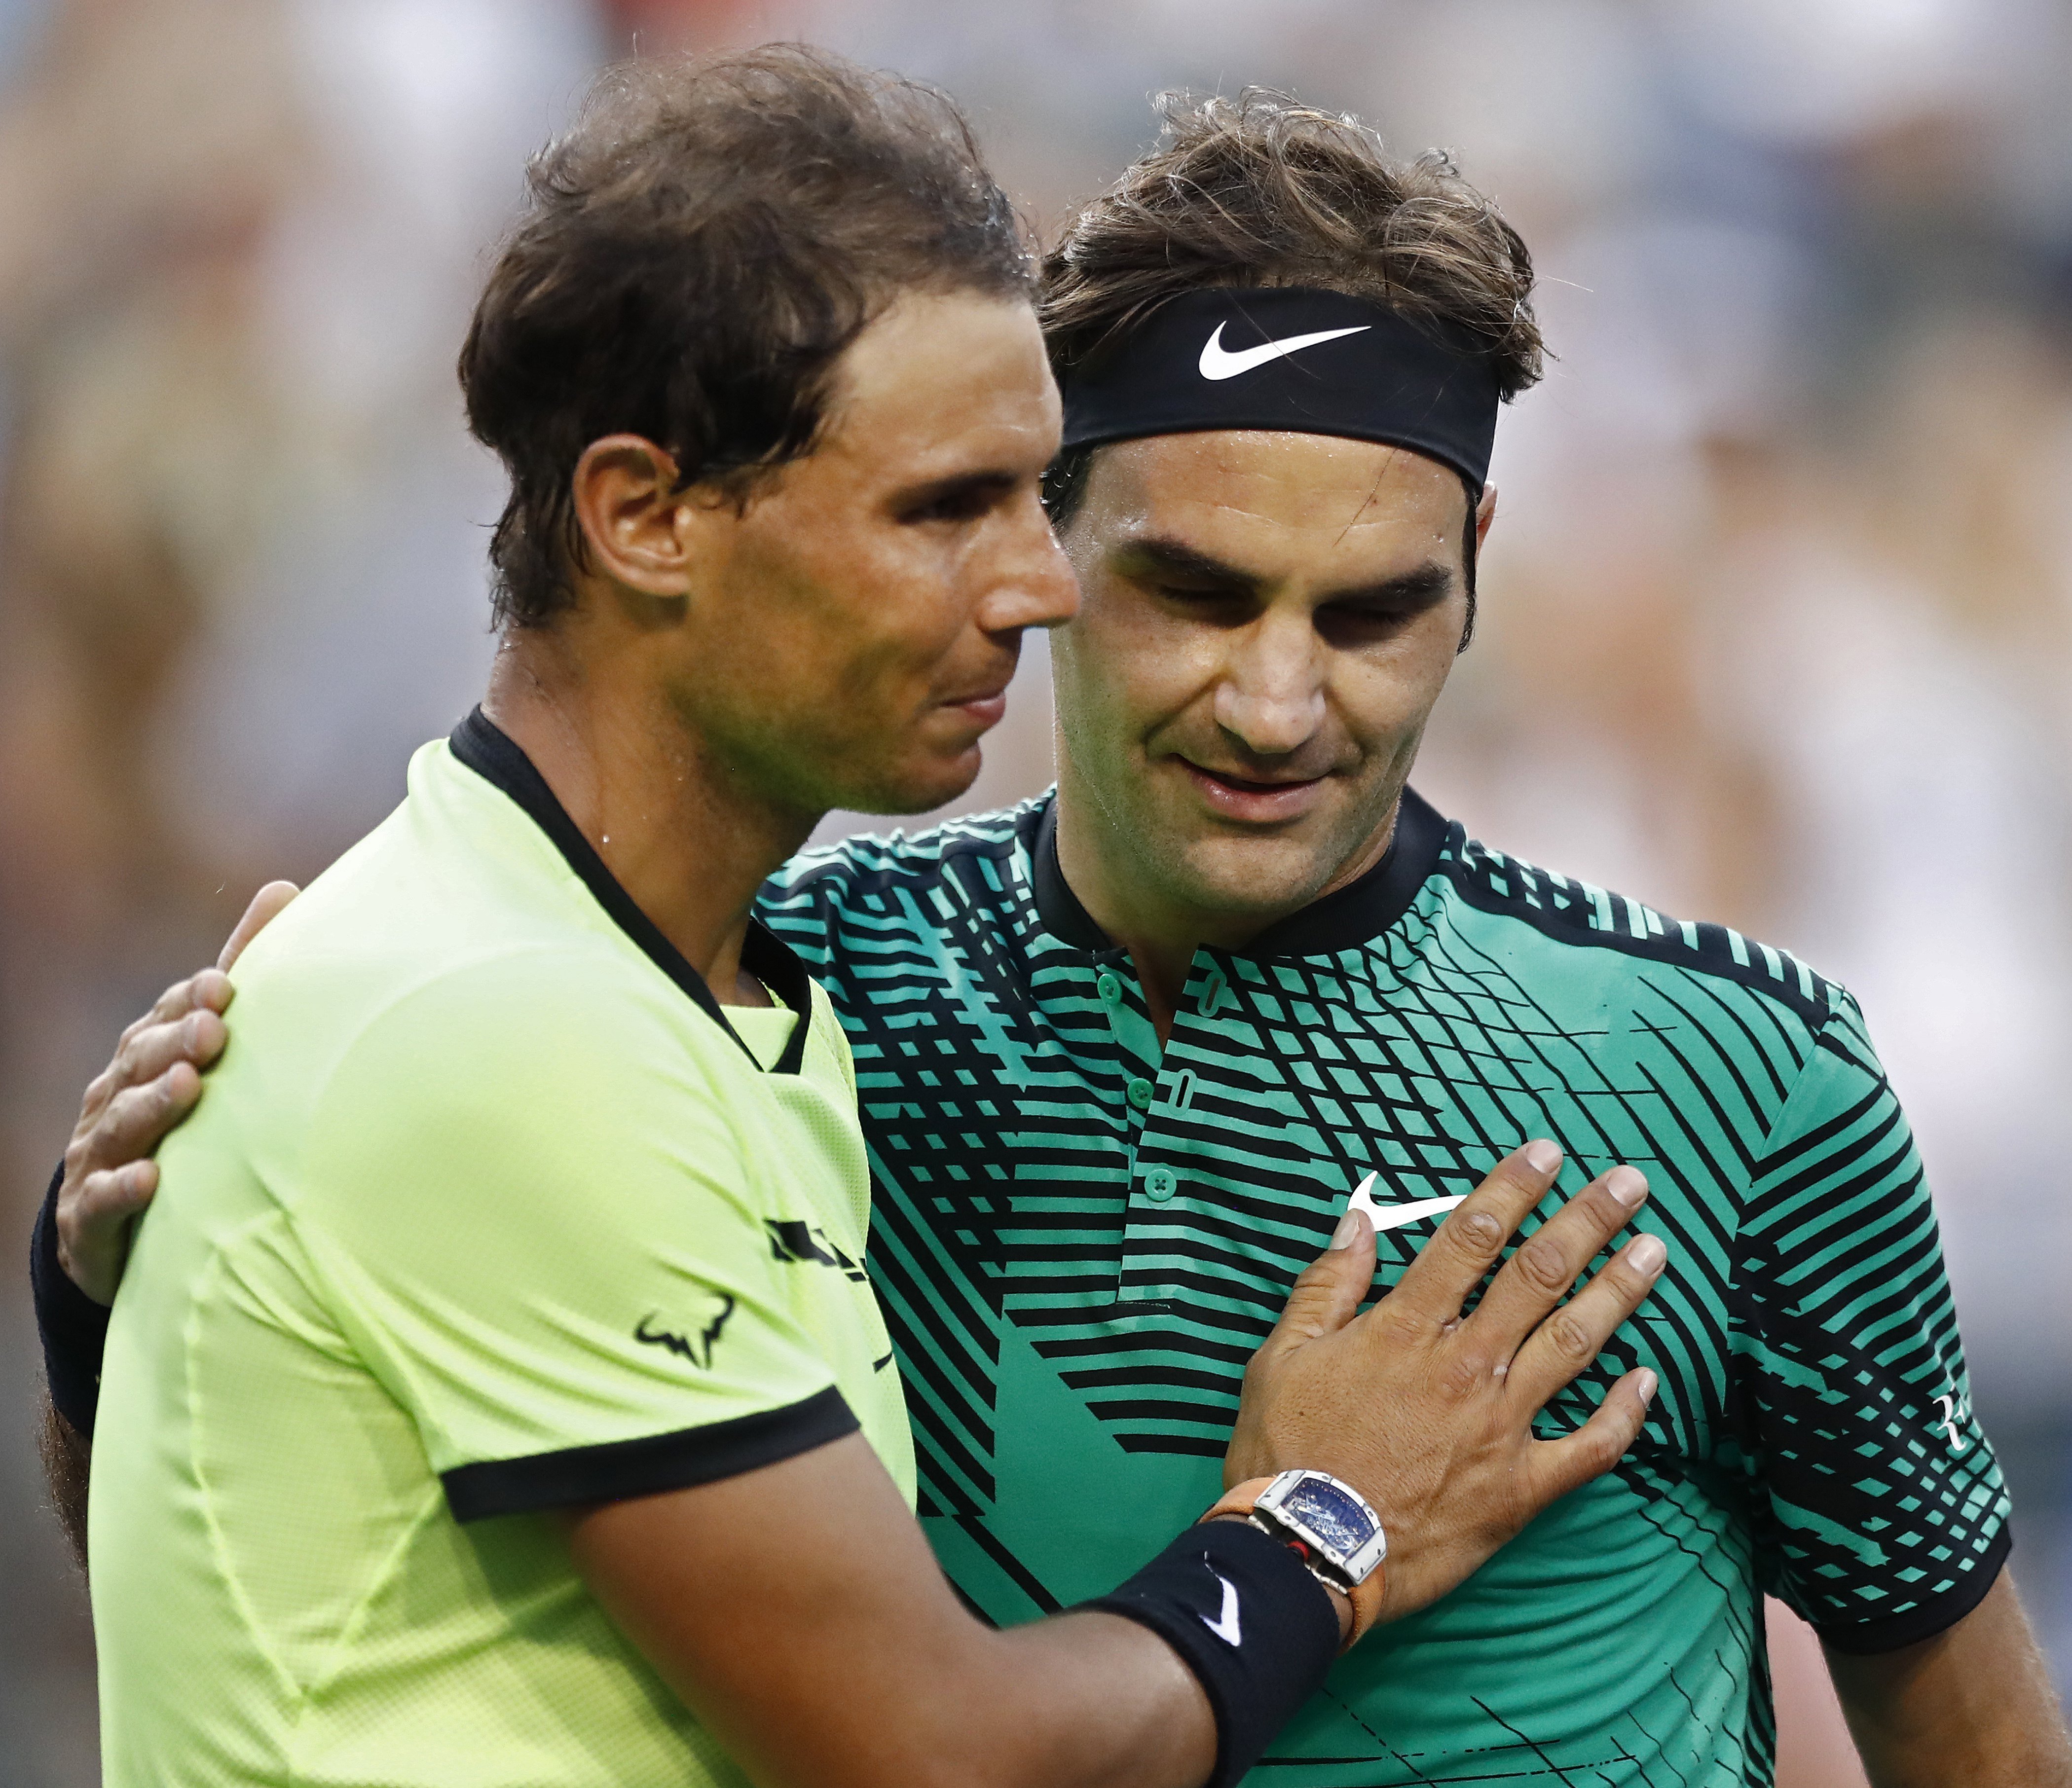 L'últim ball de Roger Federer serà aquest divendres fent parella amb Rafa Nadal a la Laver Cup